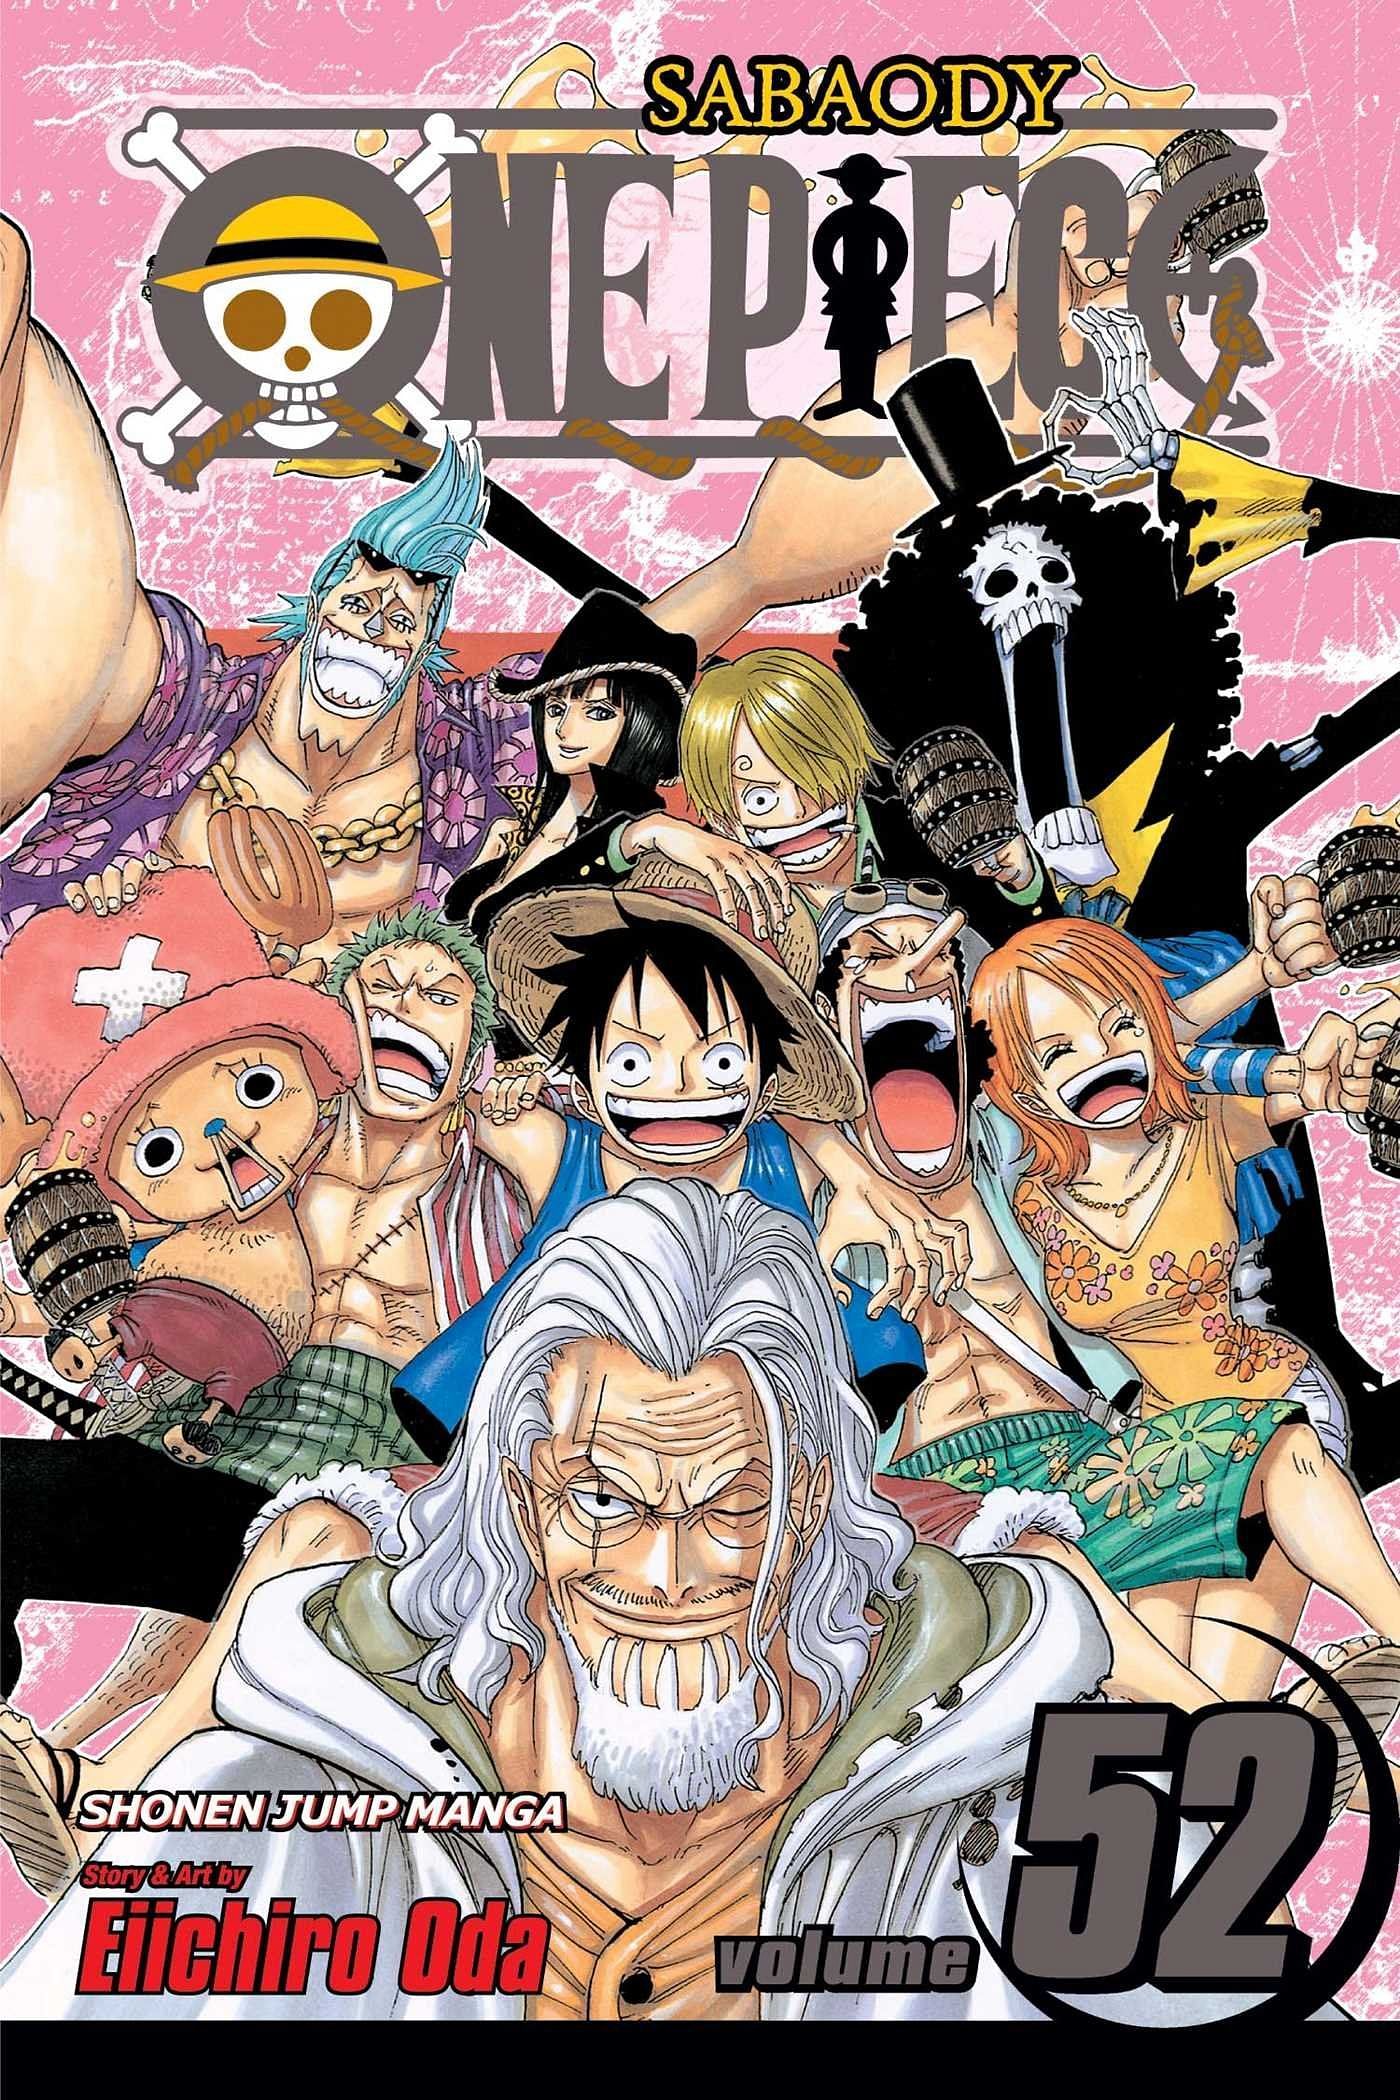 The cover art for One Piece Volume 52 (Image via Shueisha)